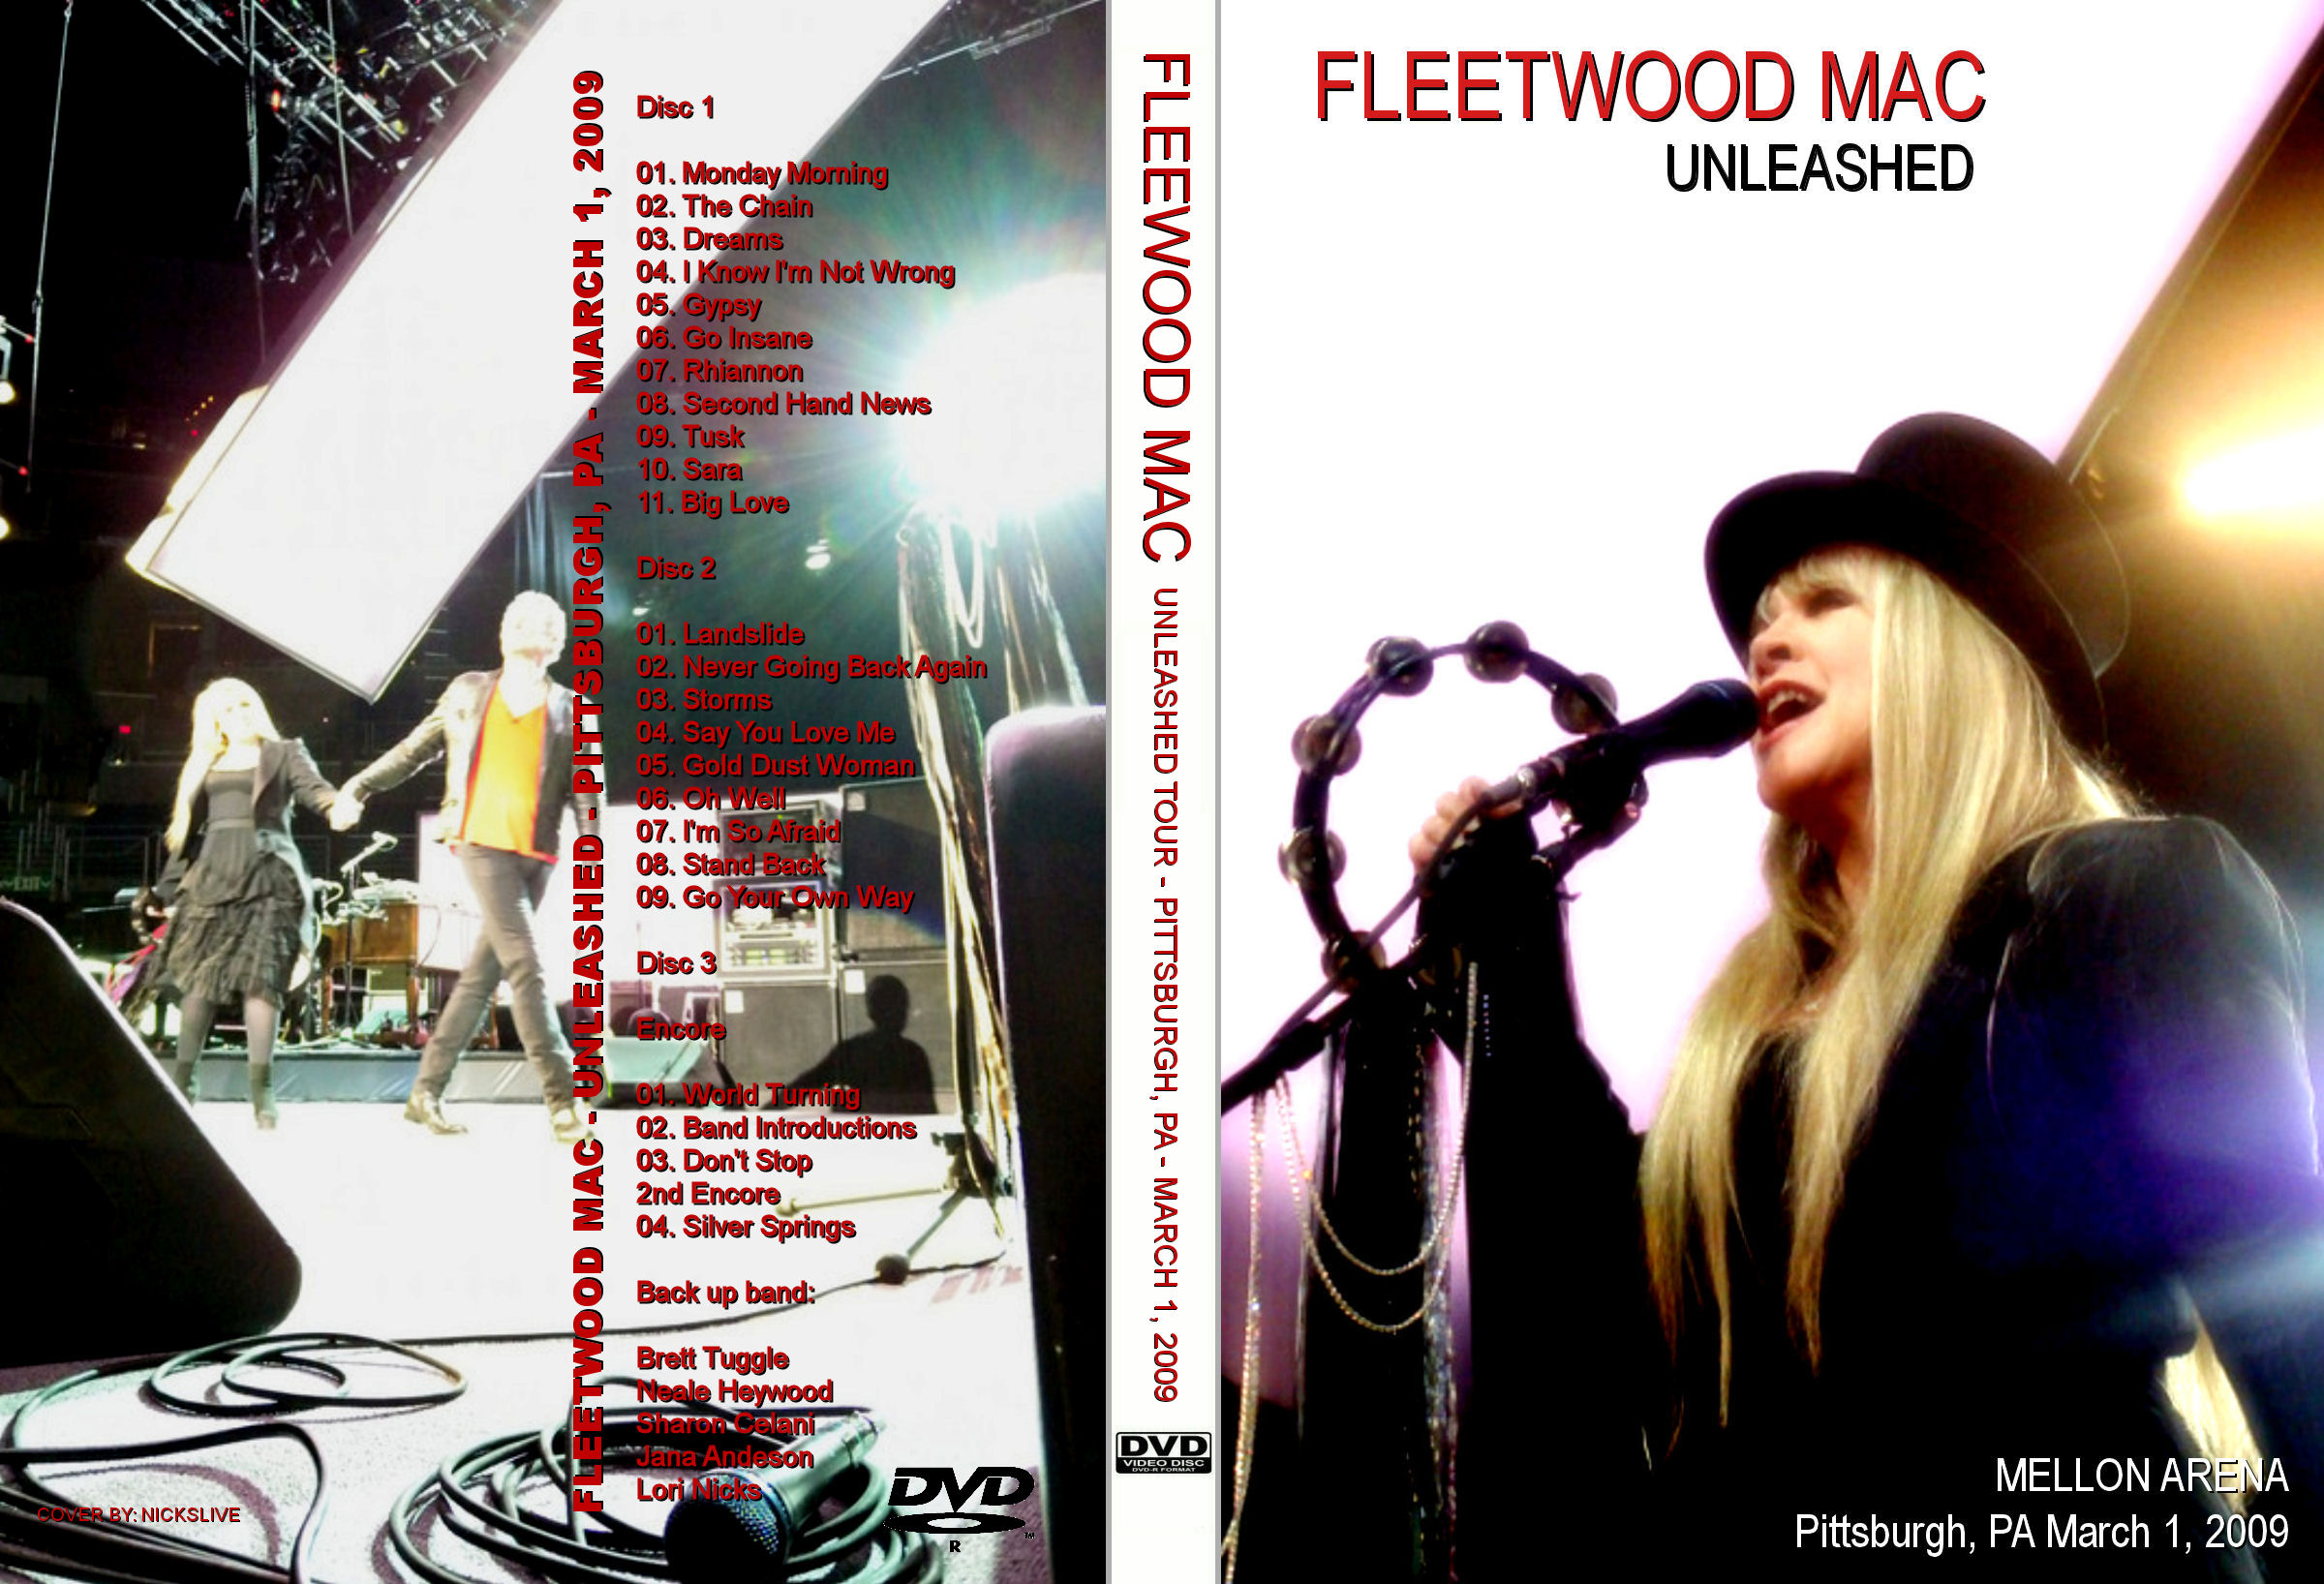 fleetwood mac live 2004 pbs torrent